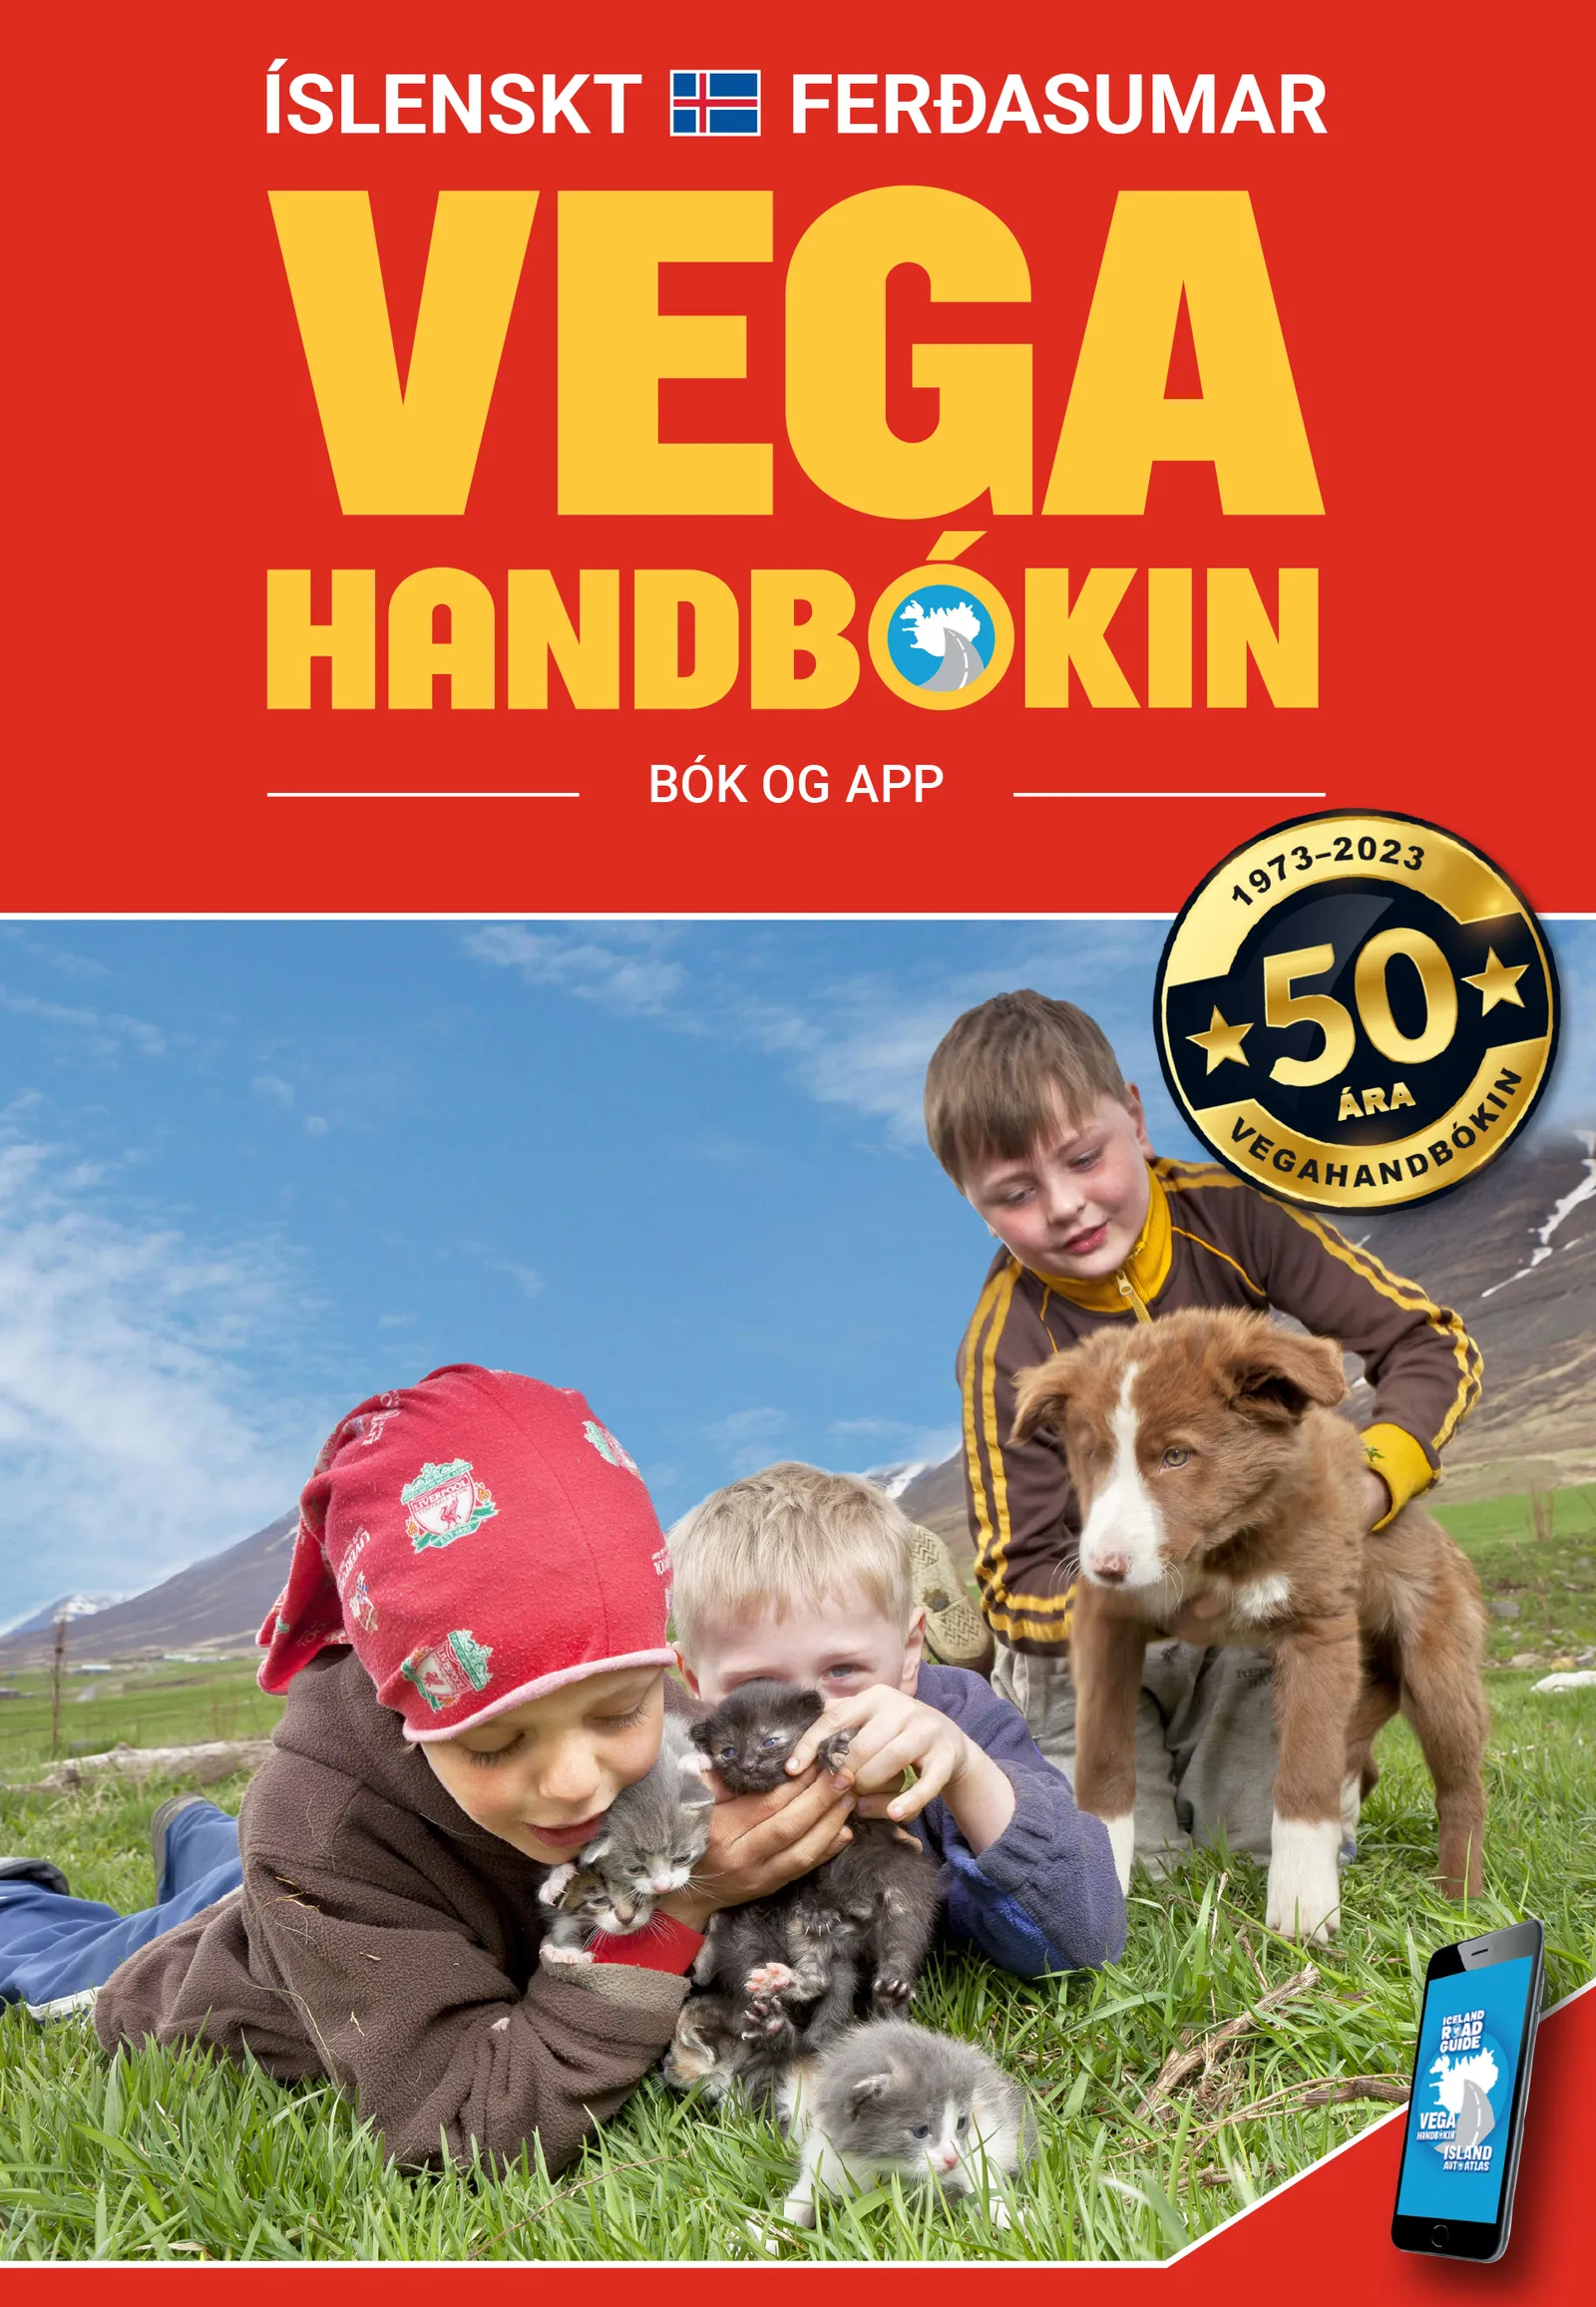 Bókakápa: Vegahandbókin Íslenskt ferðasumar — Ferðahandbókin þín í 50 ár!